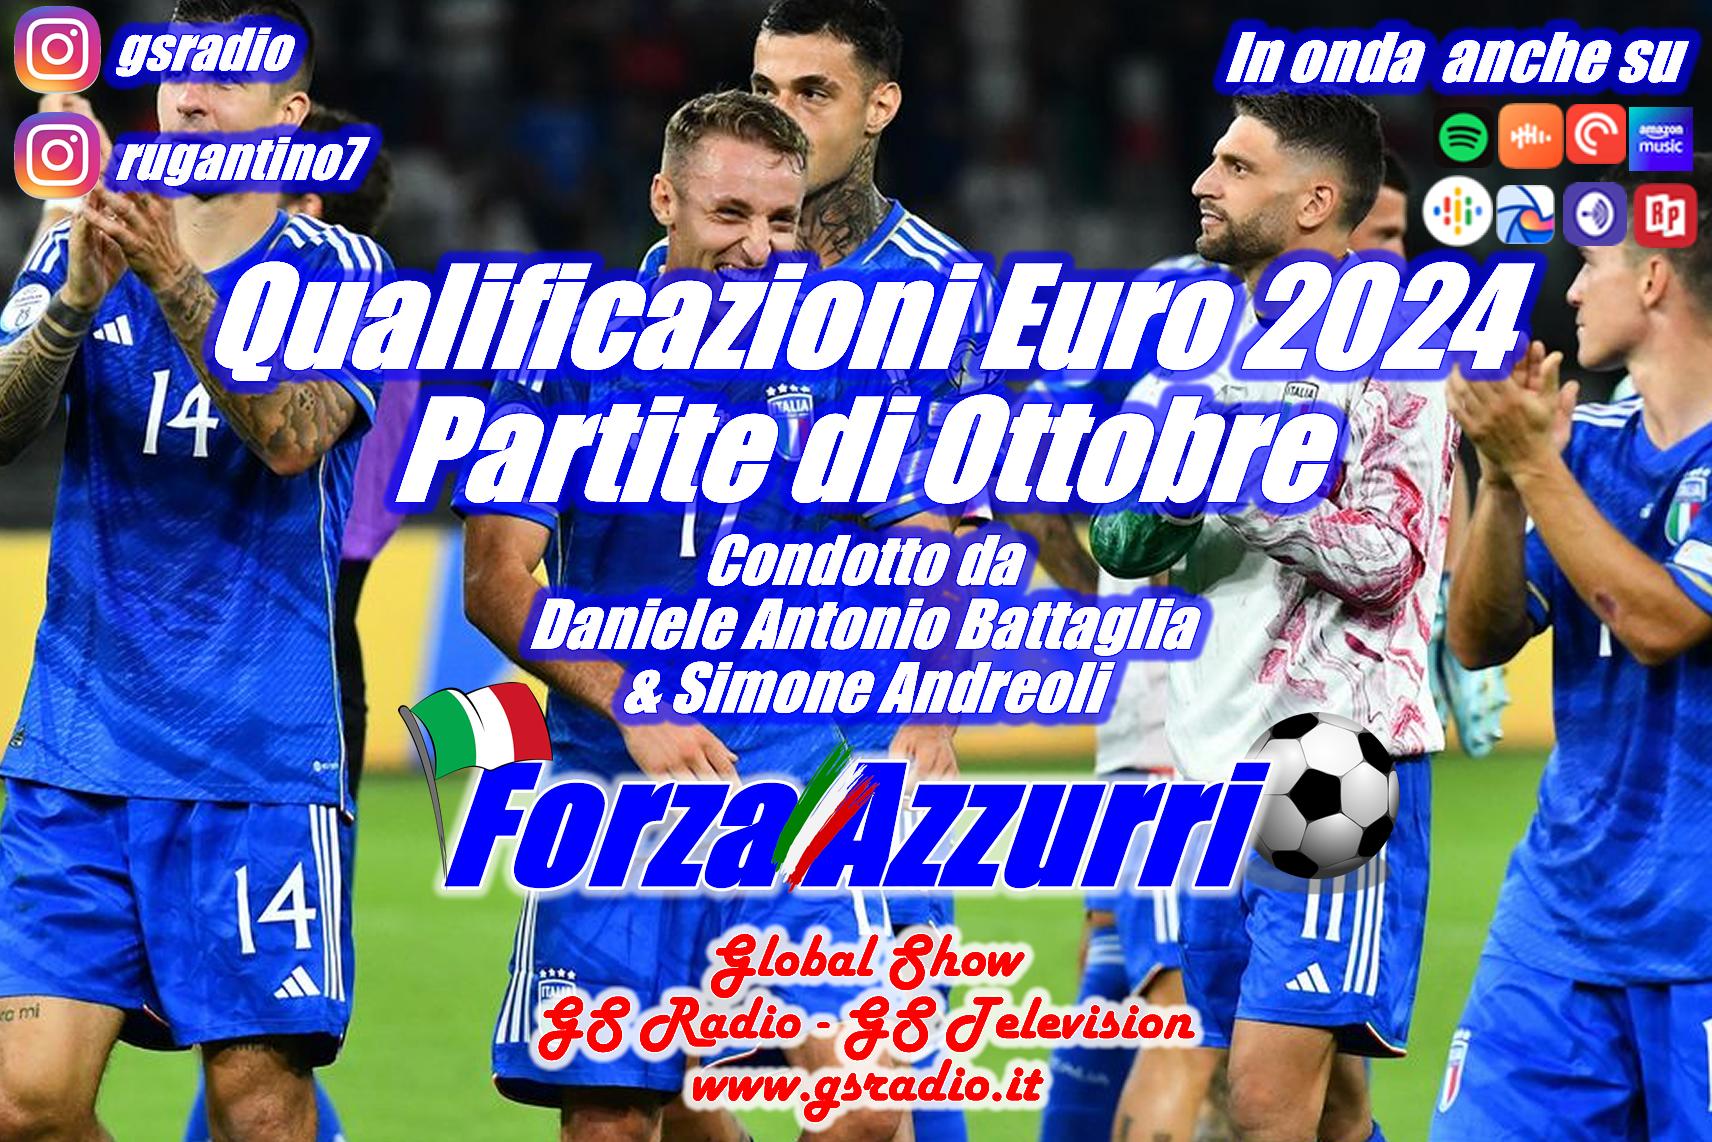 7 - Qualificazioni Euro 2024 Partite di Ottobre